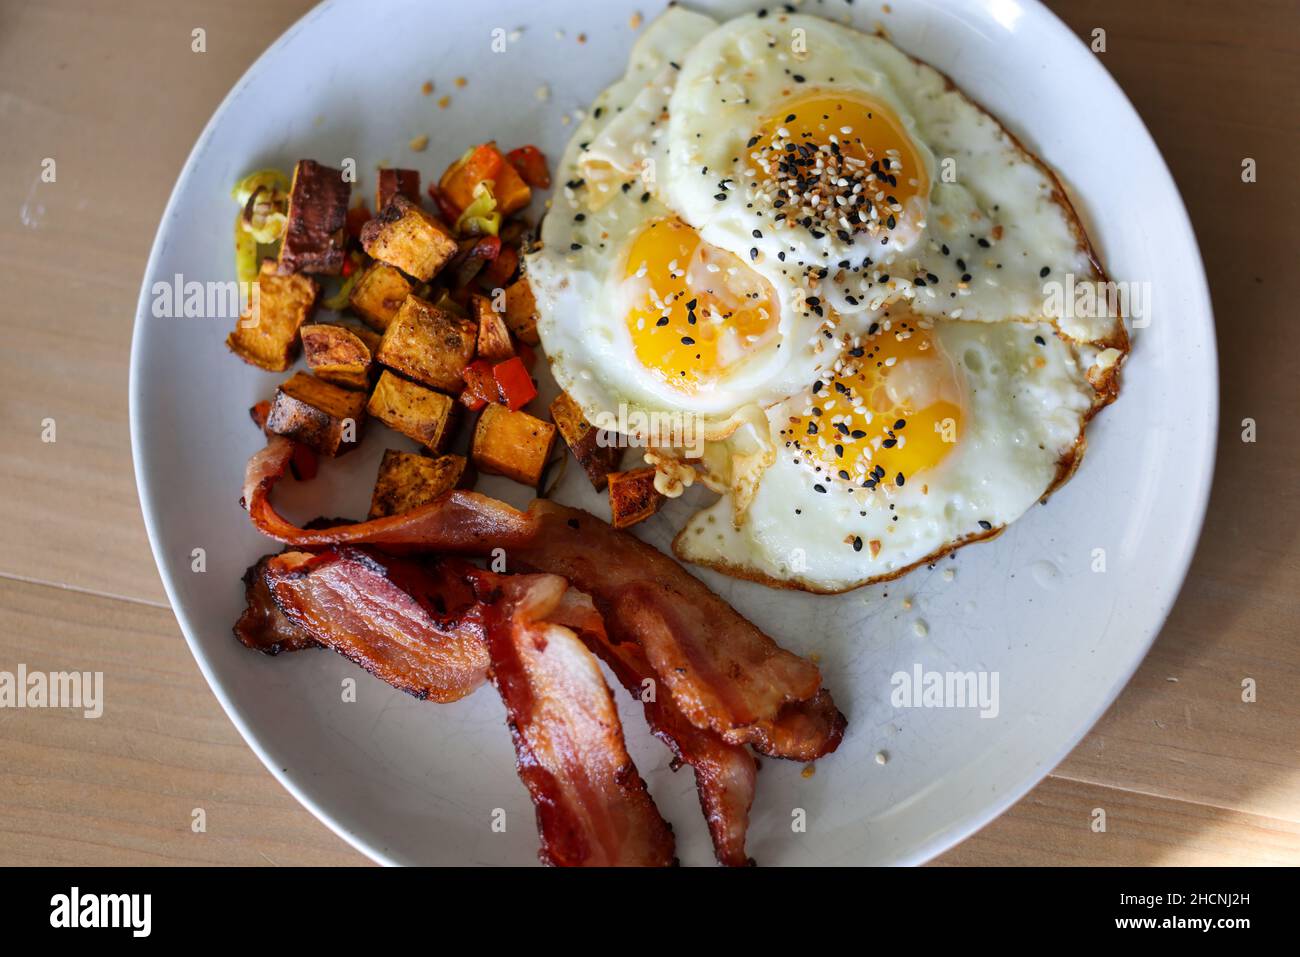 Vue de dessus des cubes de patate douce rôtis avec du bacon et des graines de sésame couvertes d'omelettes Banque D'Images